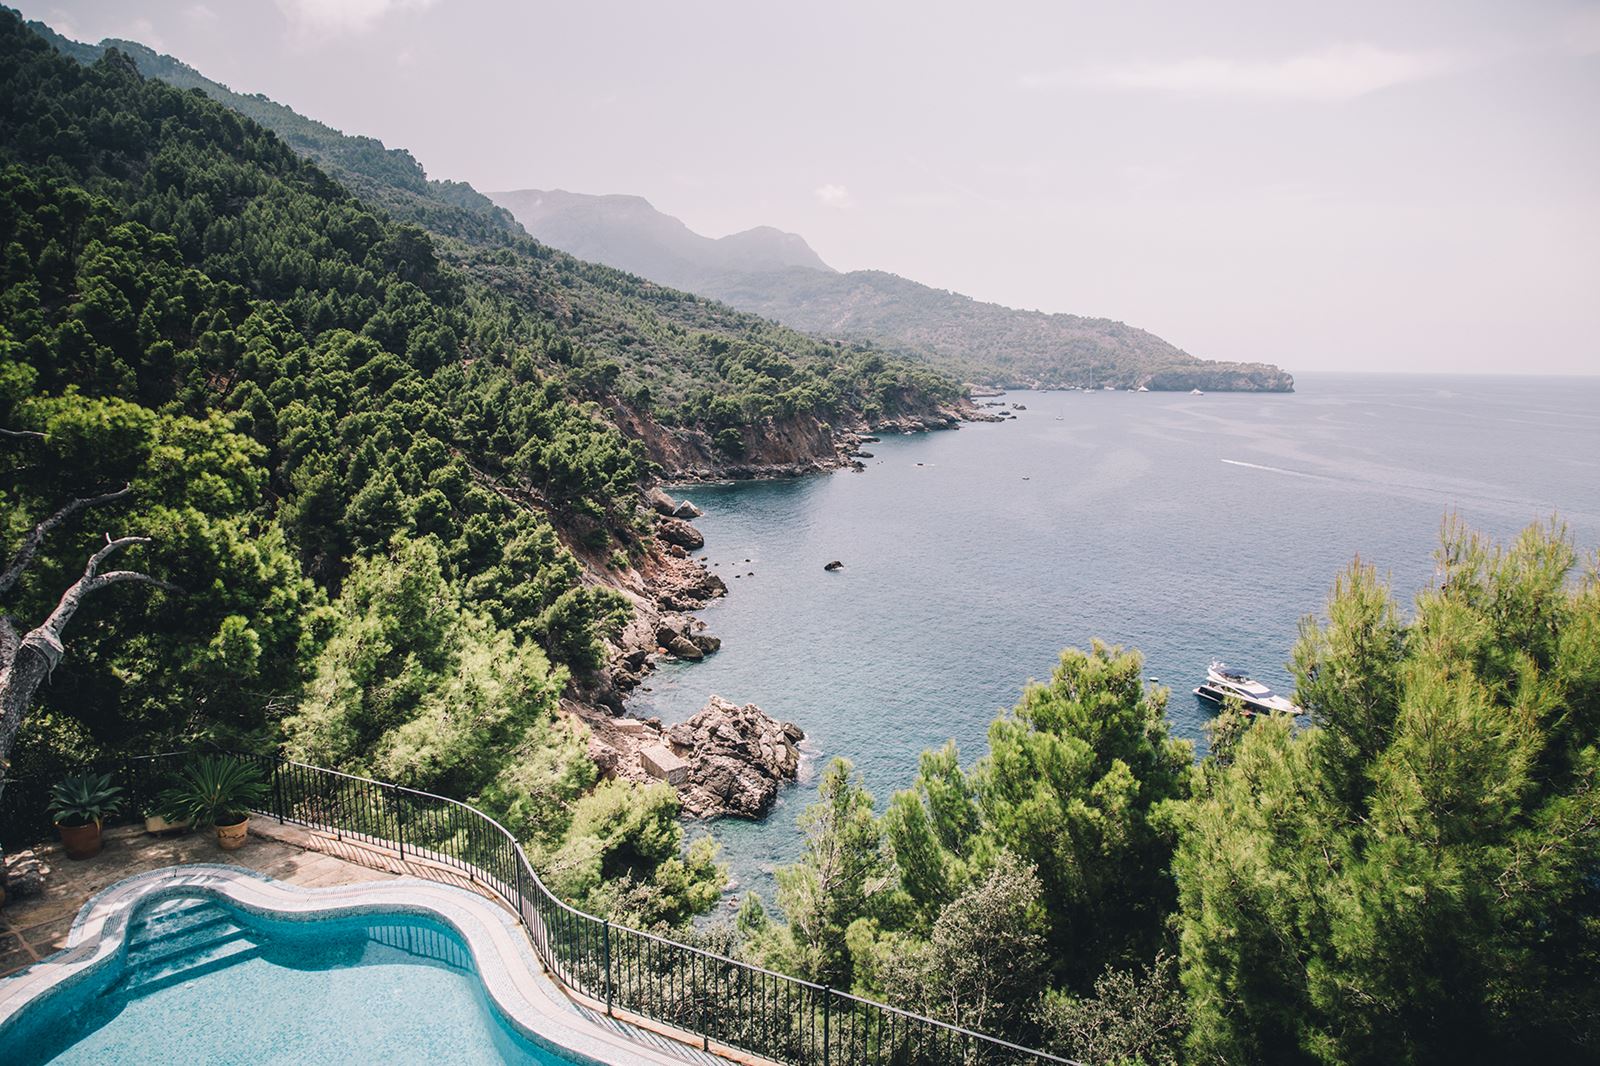 Ett verkligt drömhem i Spanien, med pool och utsikt över hav och berg och natur. Våra mäklare på Bjurfors Real Estate i Spanien hjälper dig gärna att hitta rätt hus eller lägenhet på Solkusten.